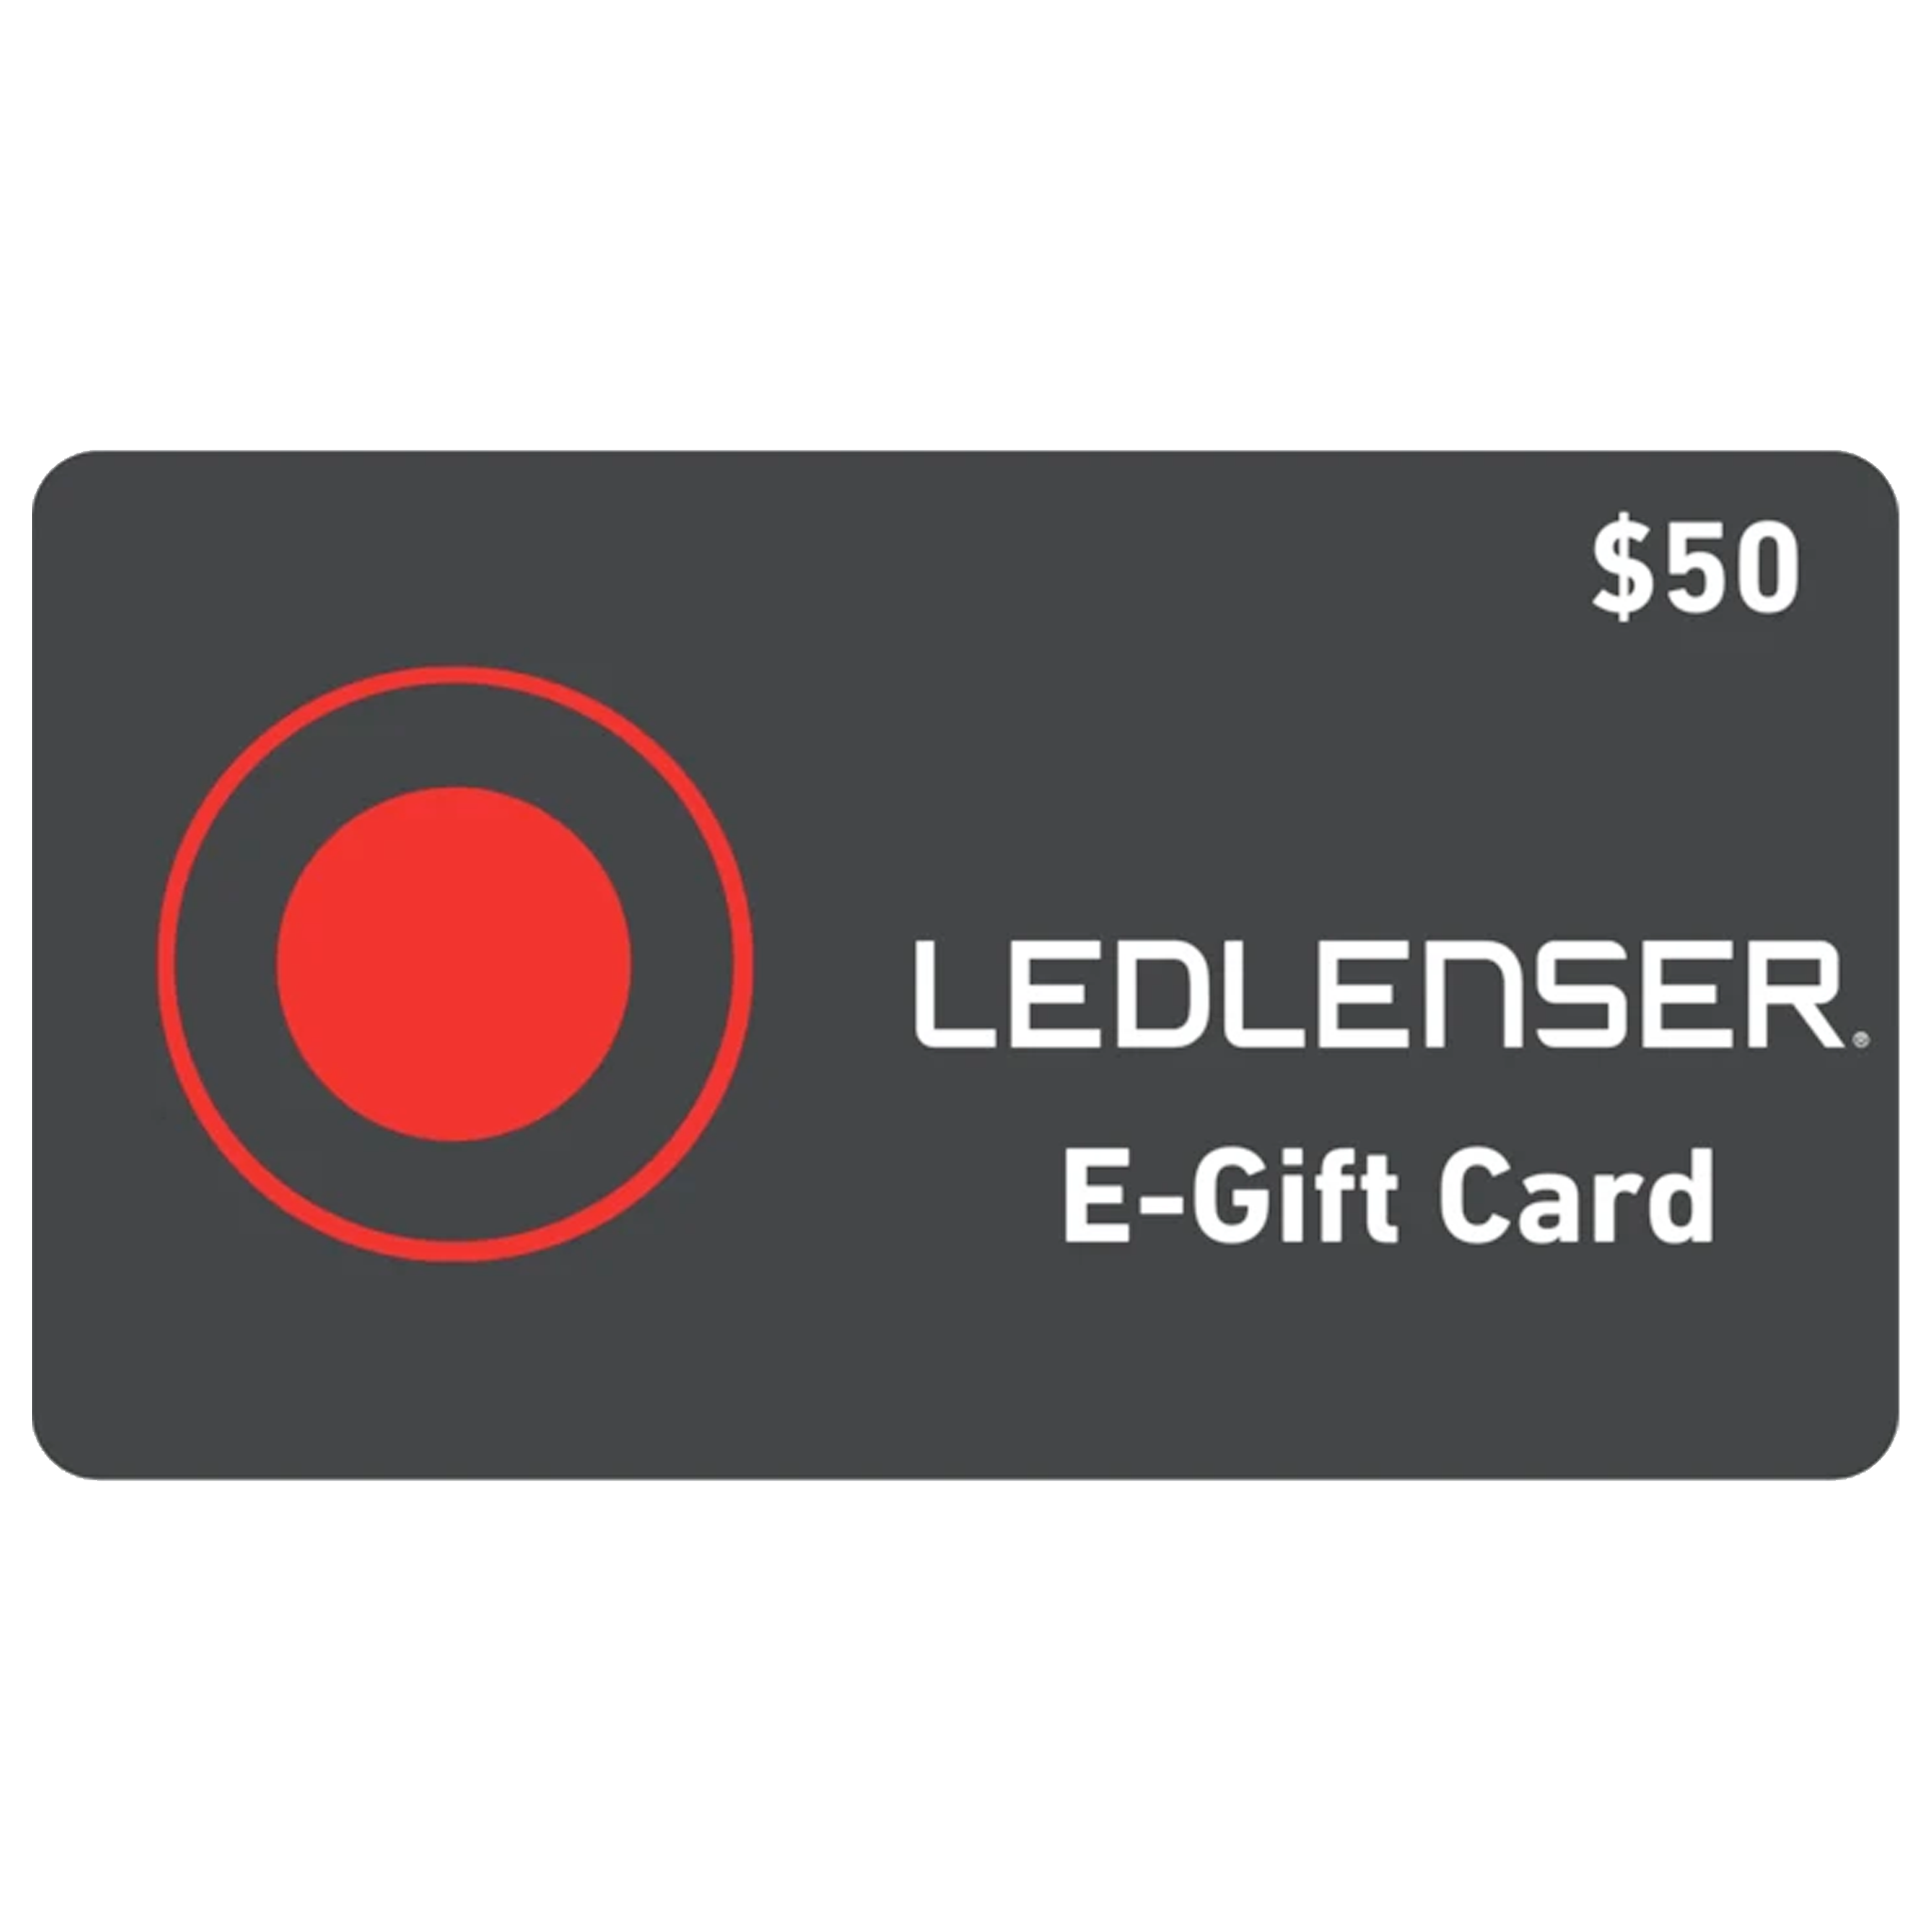 Ledlenser Gift Card - $50